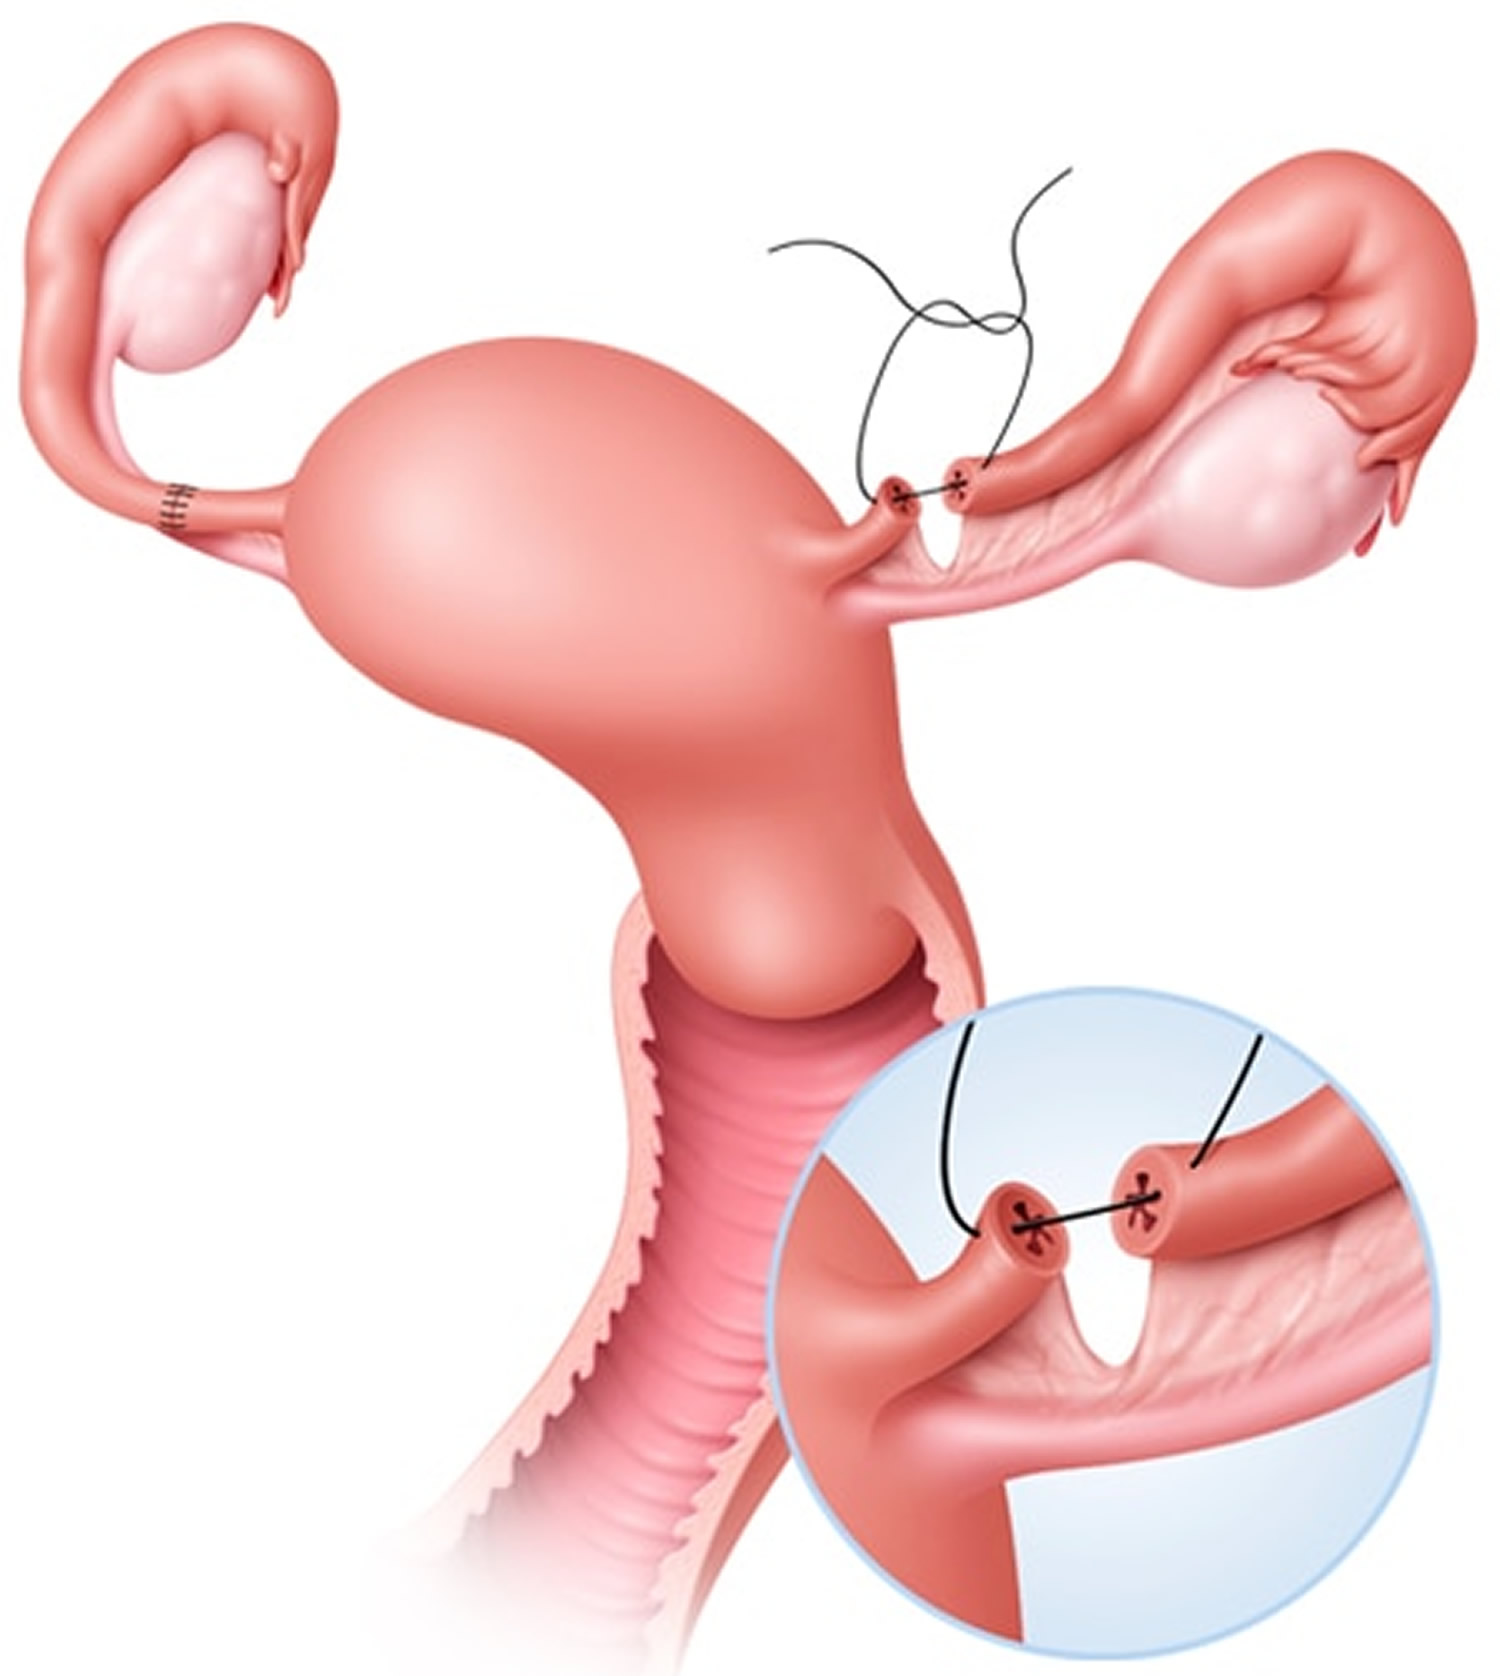 Tubal Ligation - Pregnancy After Tubal Ligation, Side Effects